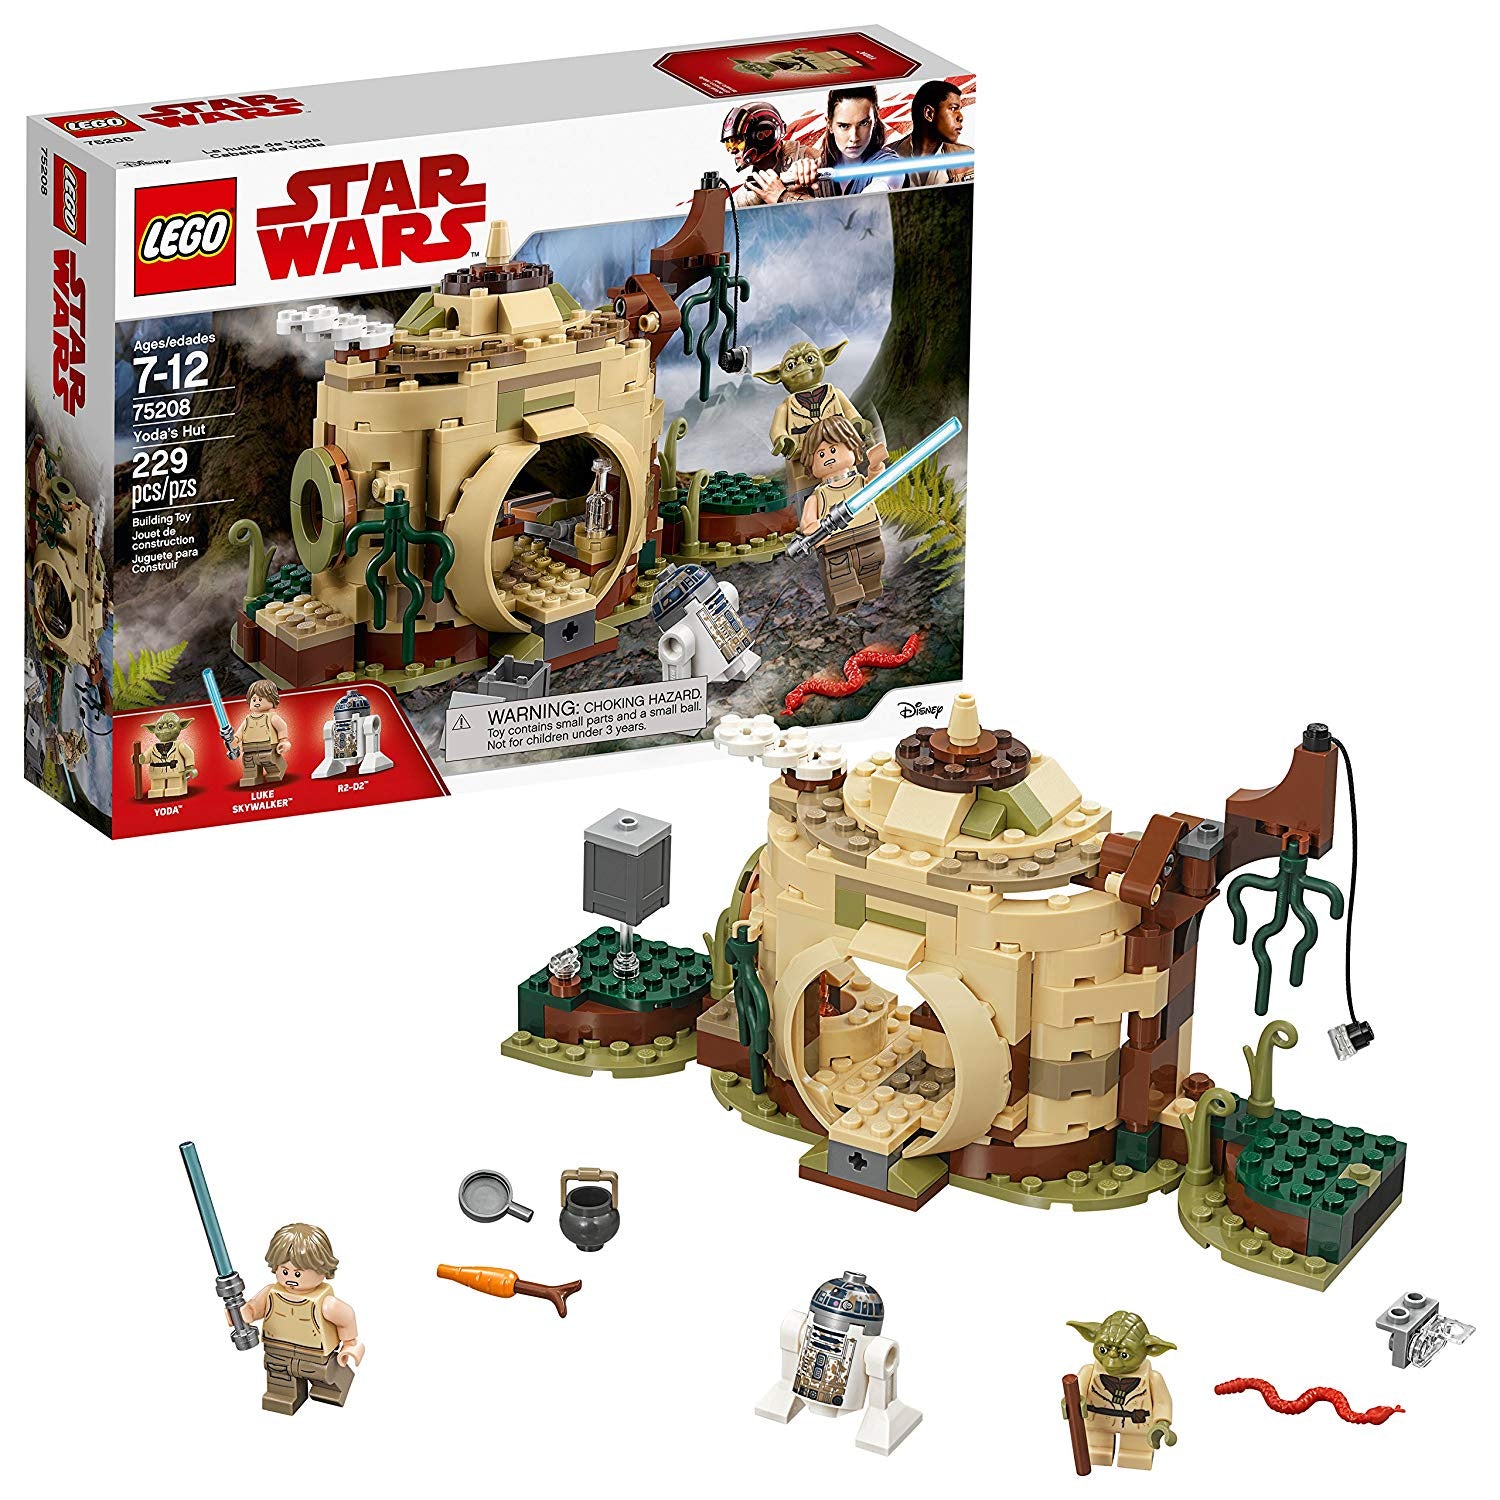 Series: Lego Star Wars: Yoda's Hut 75208